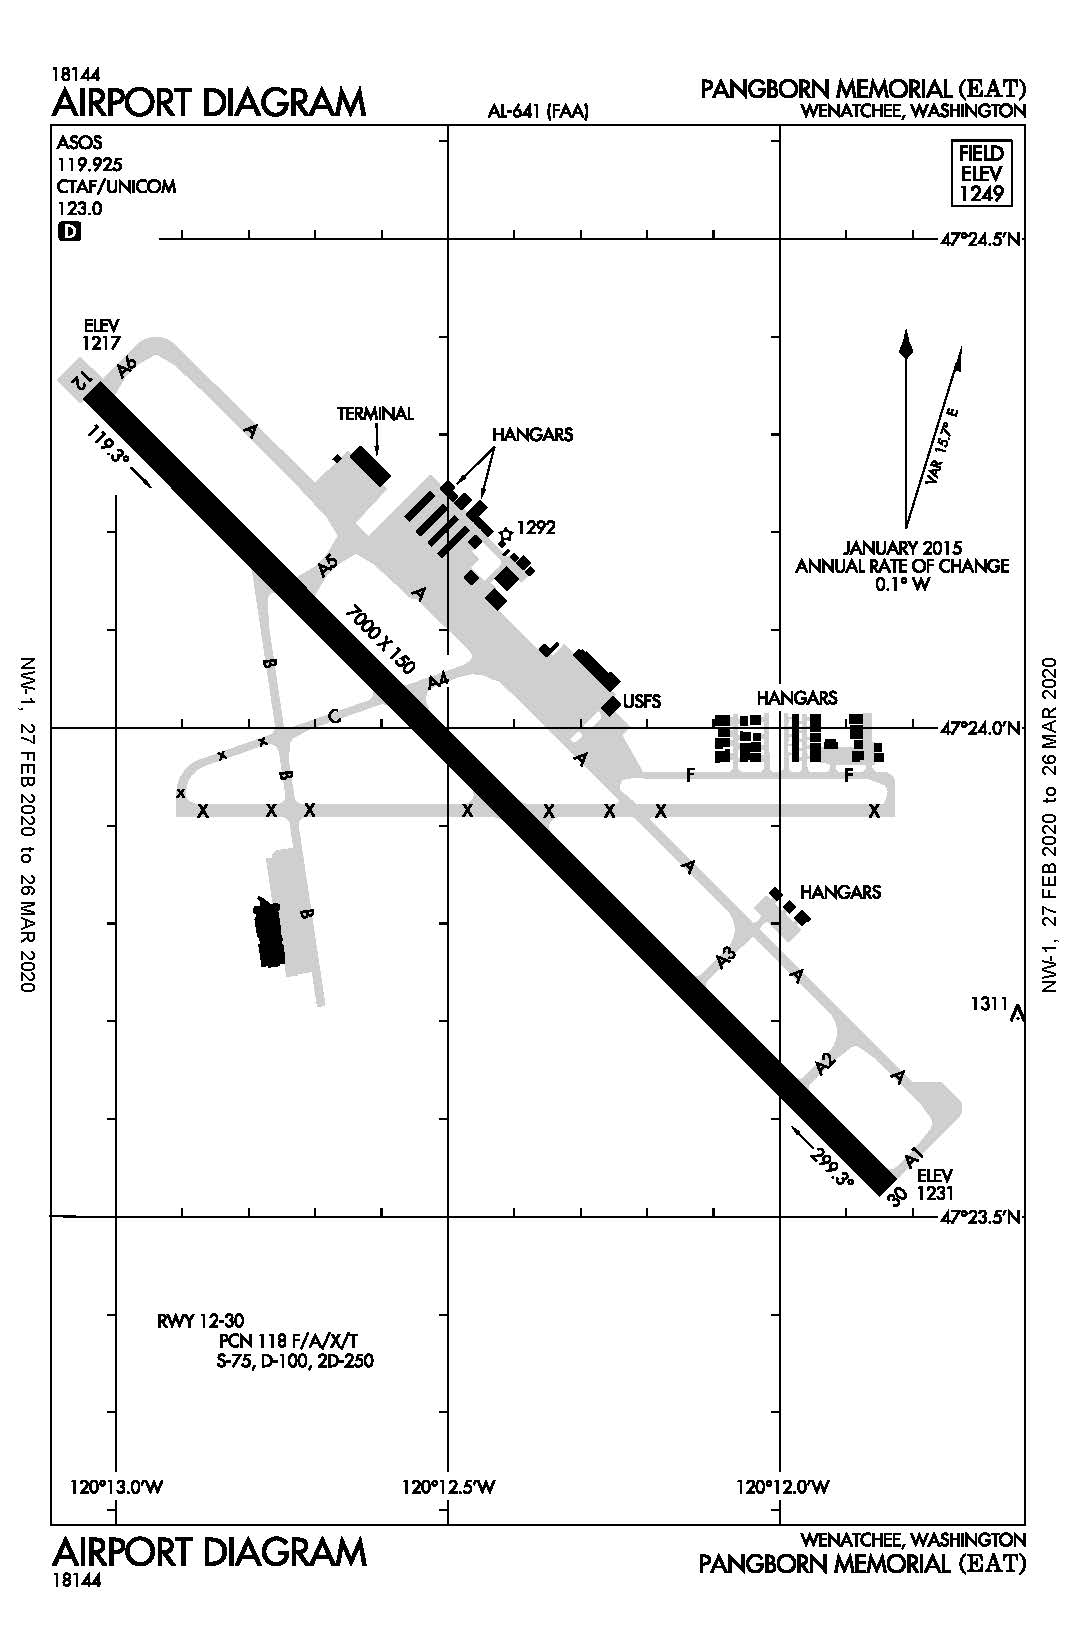 Pangborn Memorial Airport Diagram